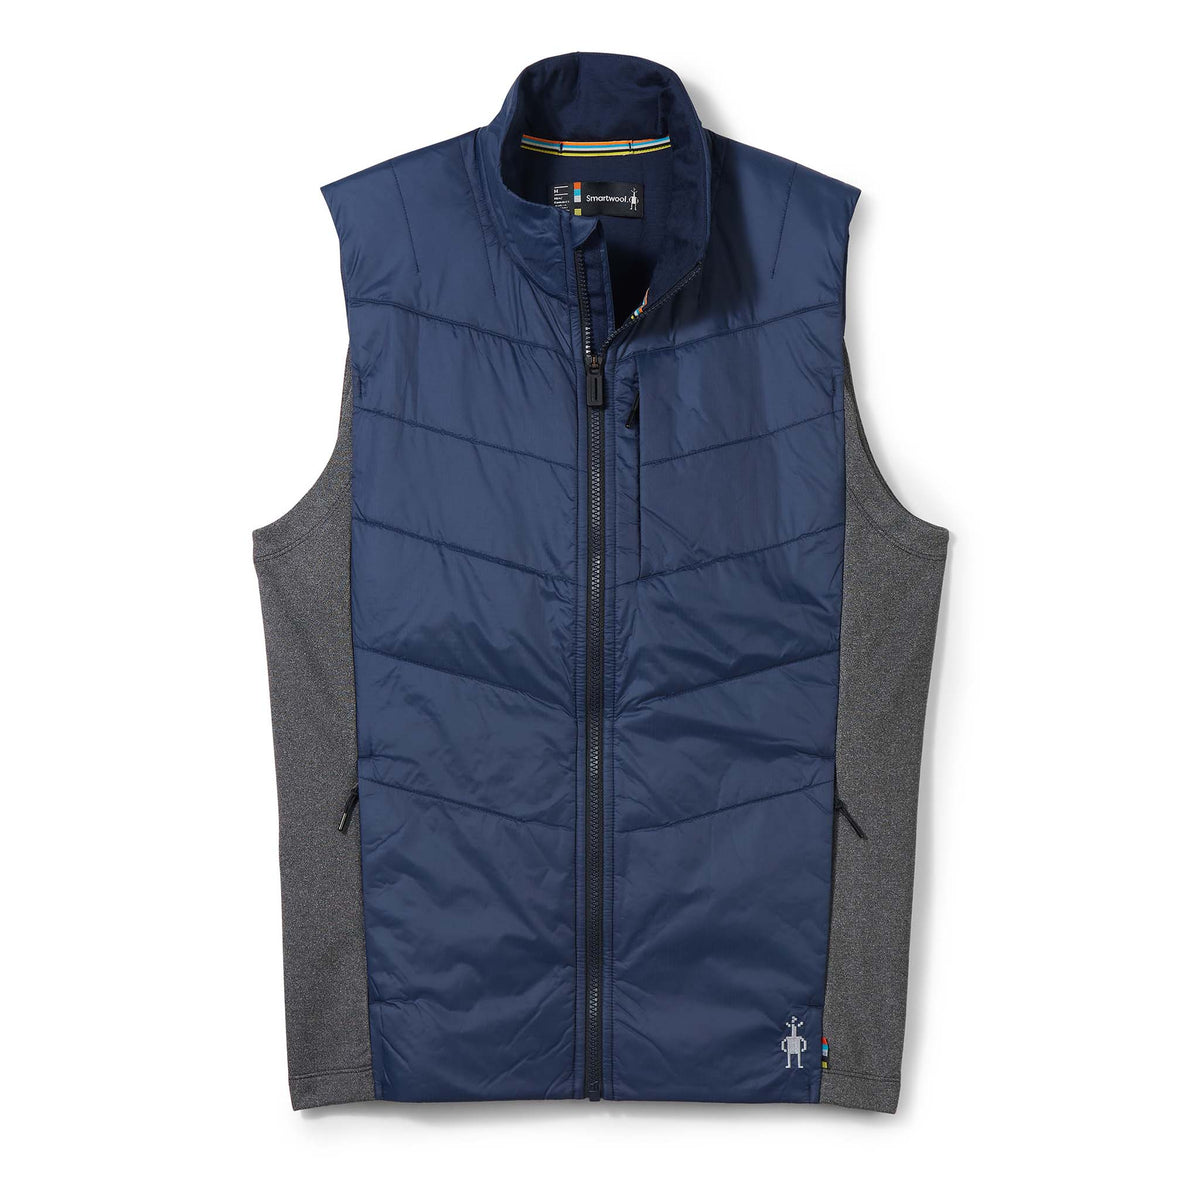 Smartwool Smartloft veste isolante sans manches bleu marine homme